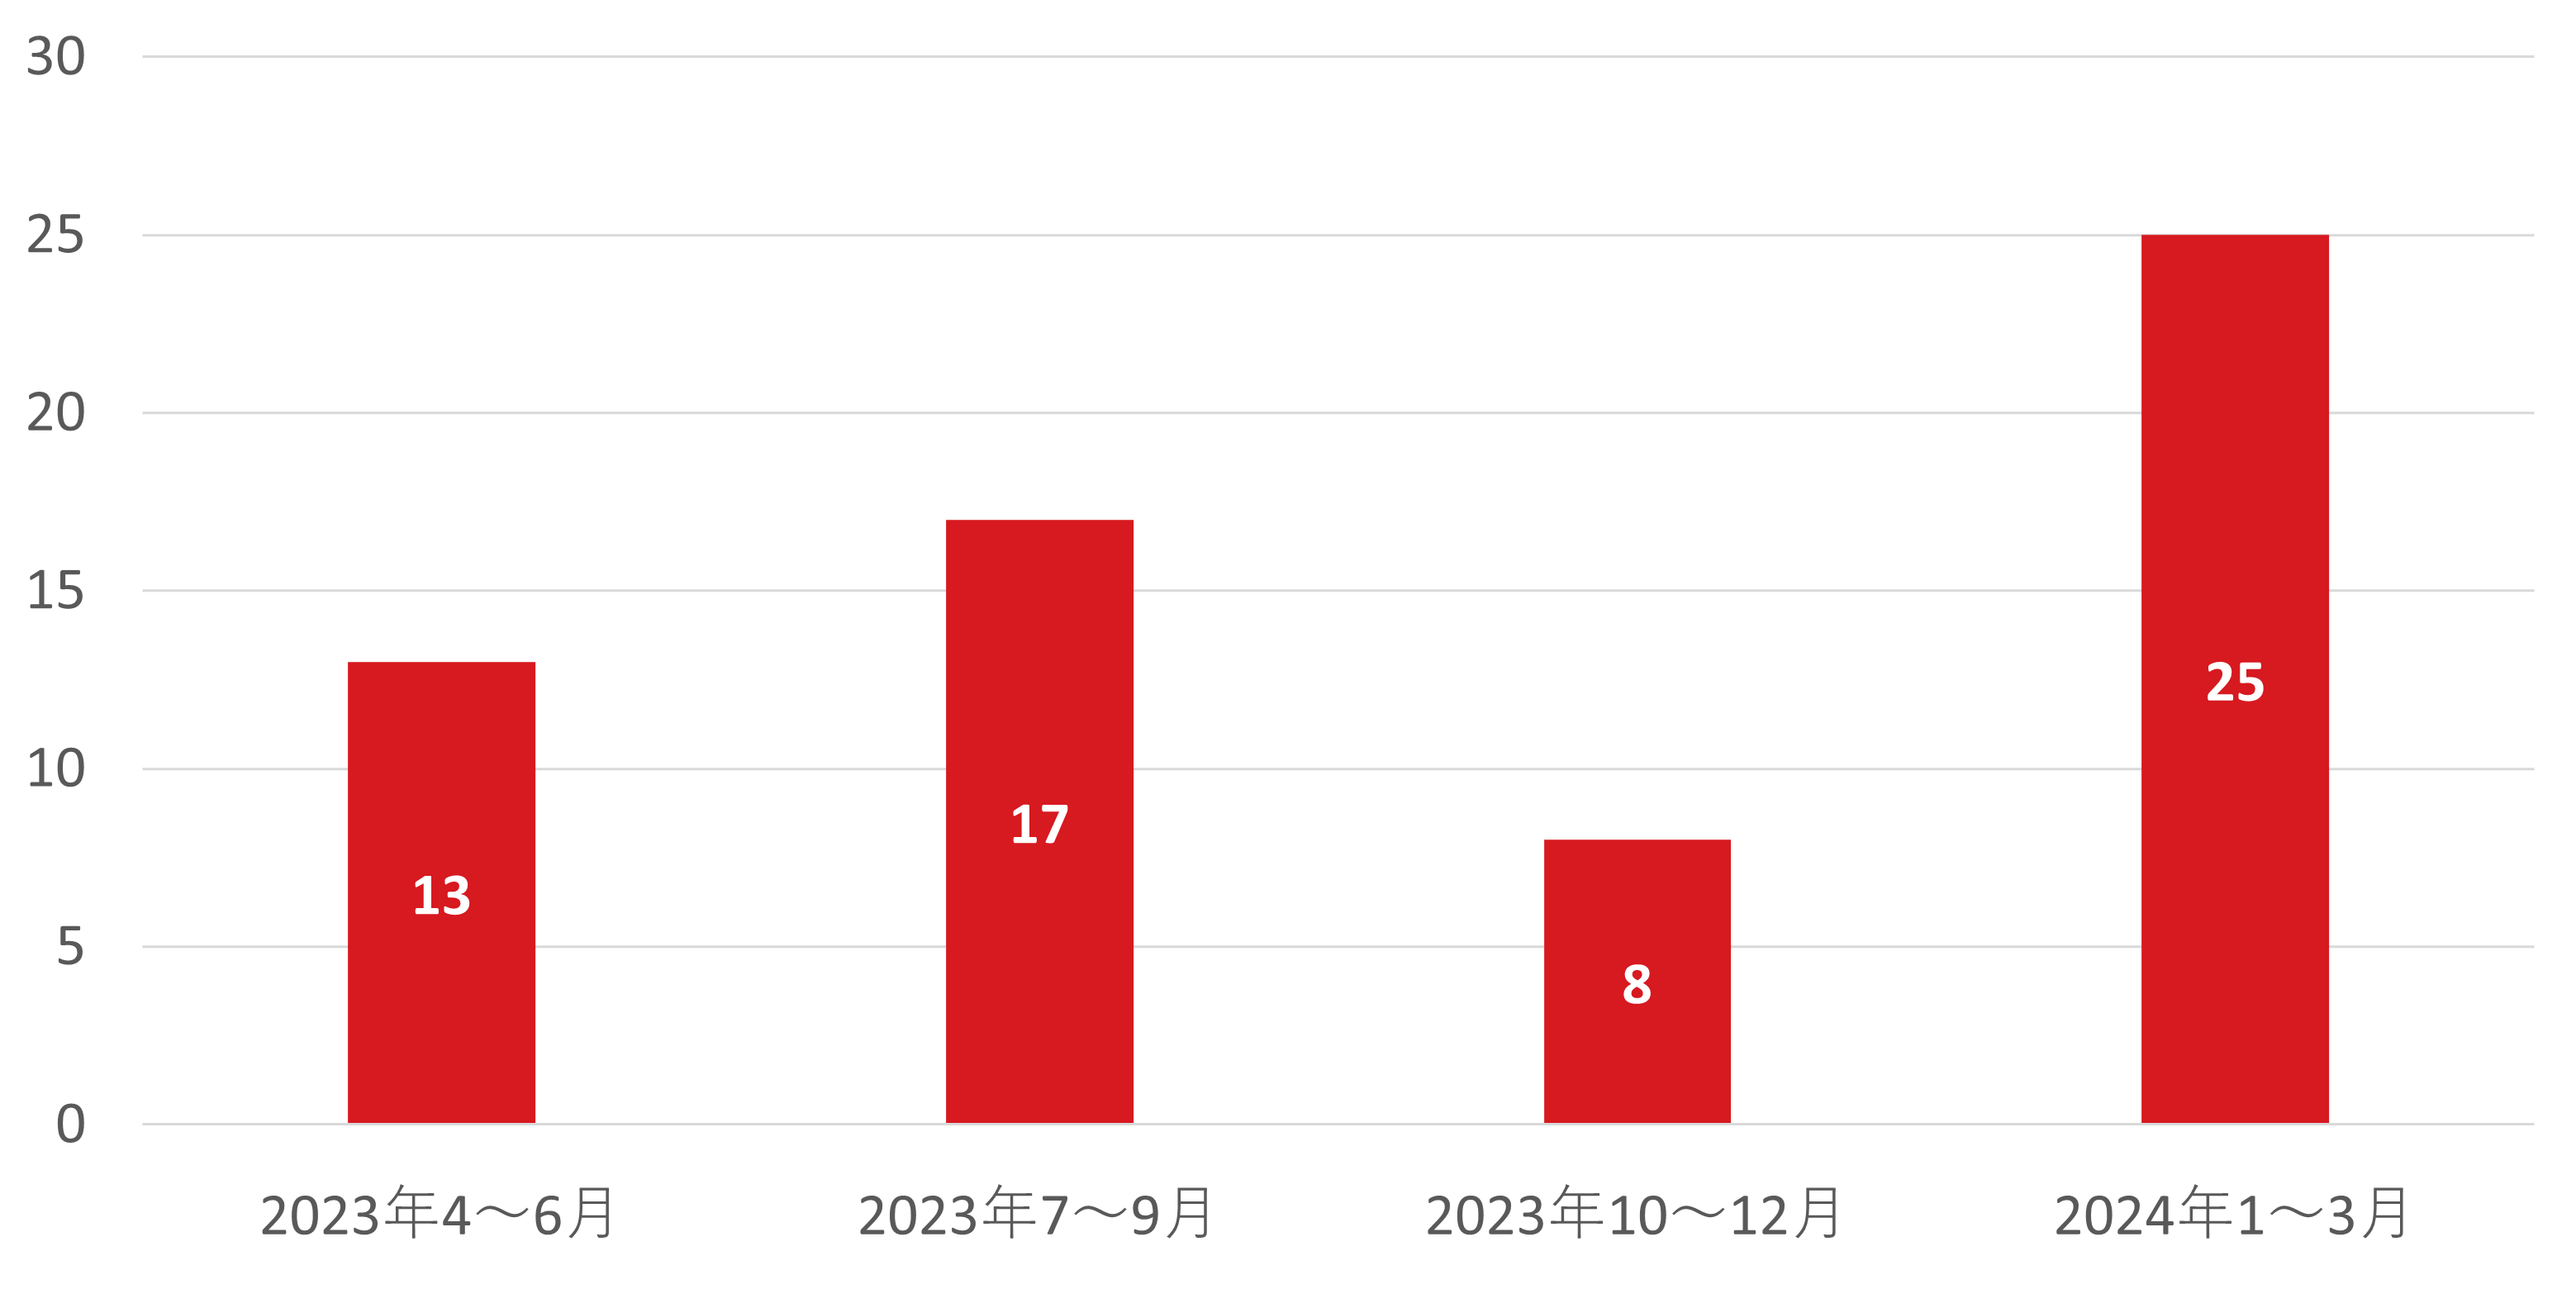 図：国内組織における不正ログイン被害公表件数の推移 2023年第2四半期～2024年第1四半期